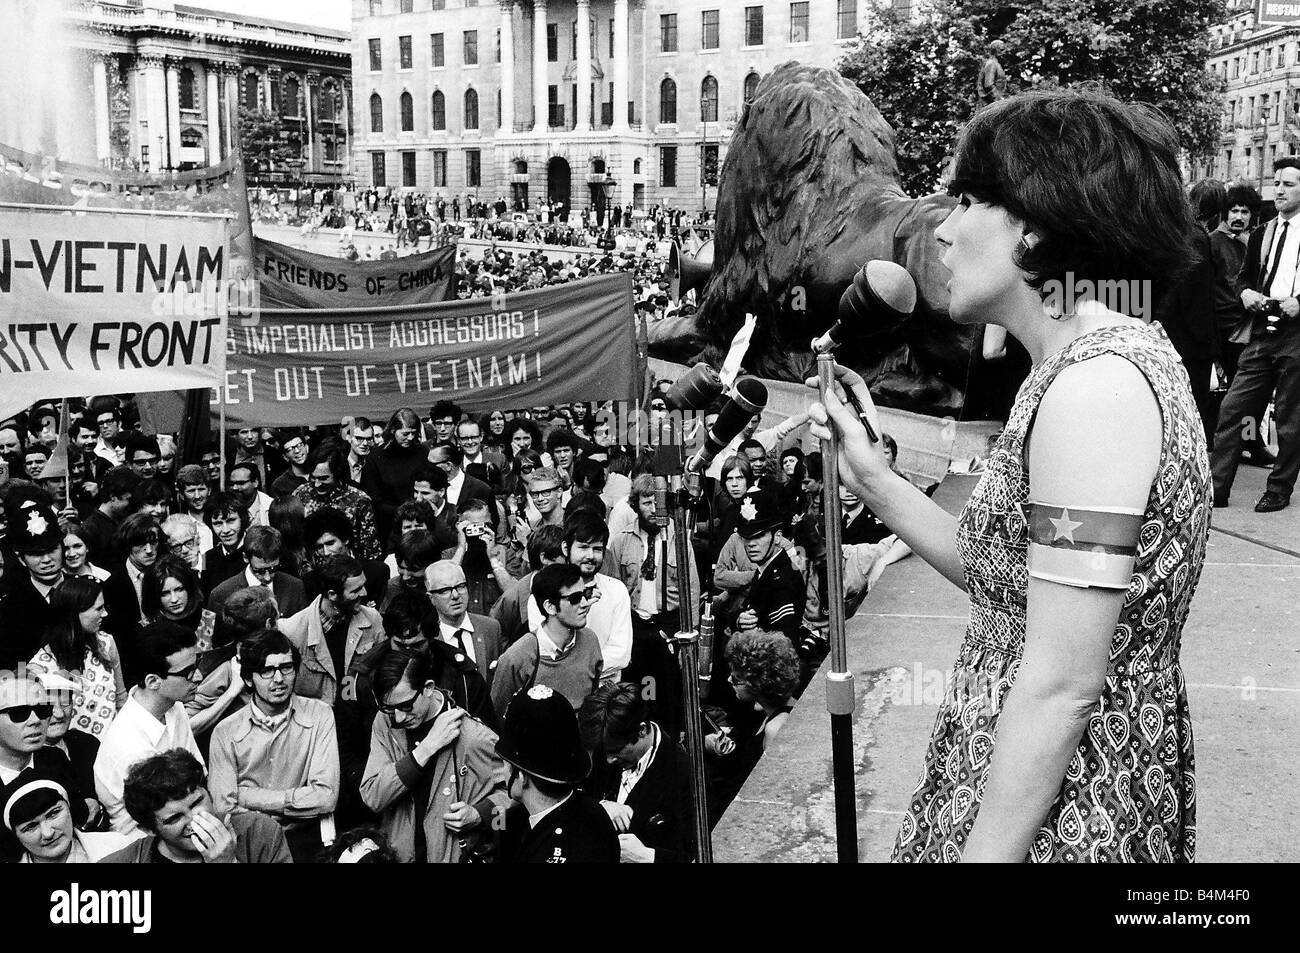 Demonstration-Anti-Vietnamkrieg-Lautsprecher zu denunzieren, den Vietnam-Krieg und die US-Regierungen Beteiligung von der Bühne Trafalgar Square im Juli 1968 Stockfoto